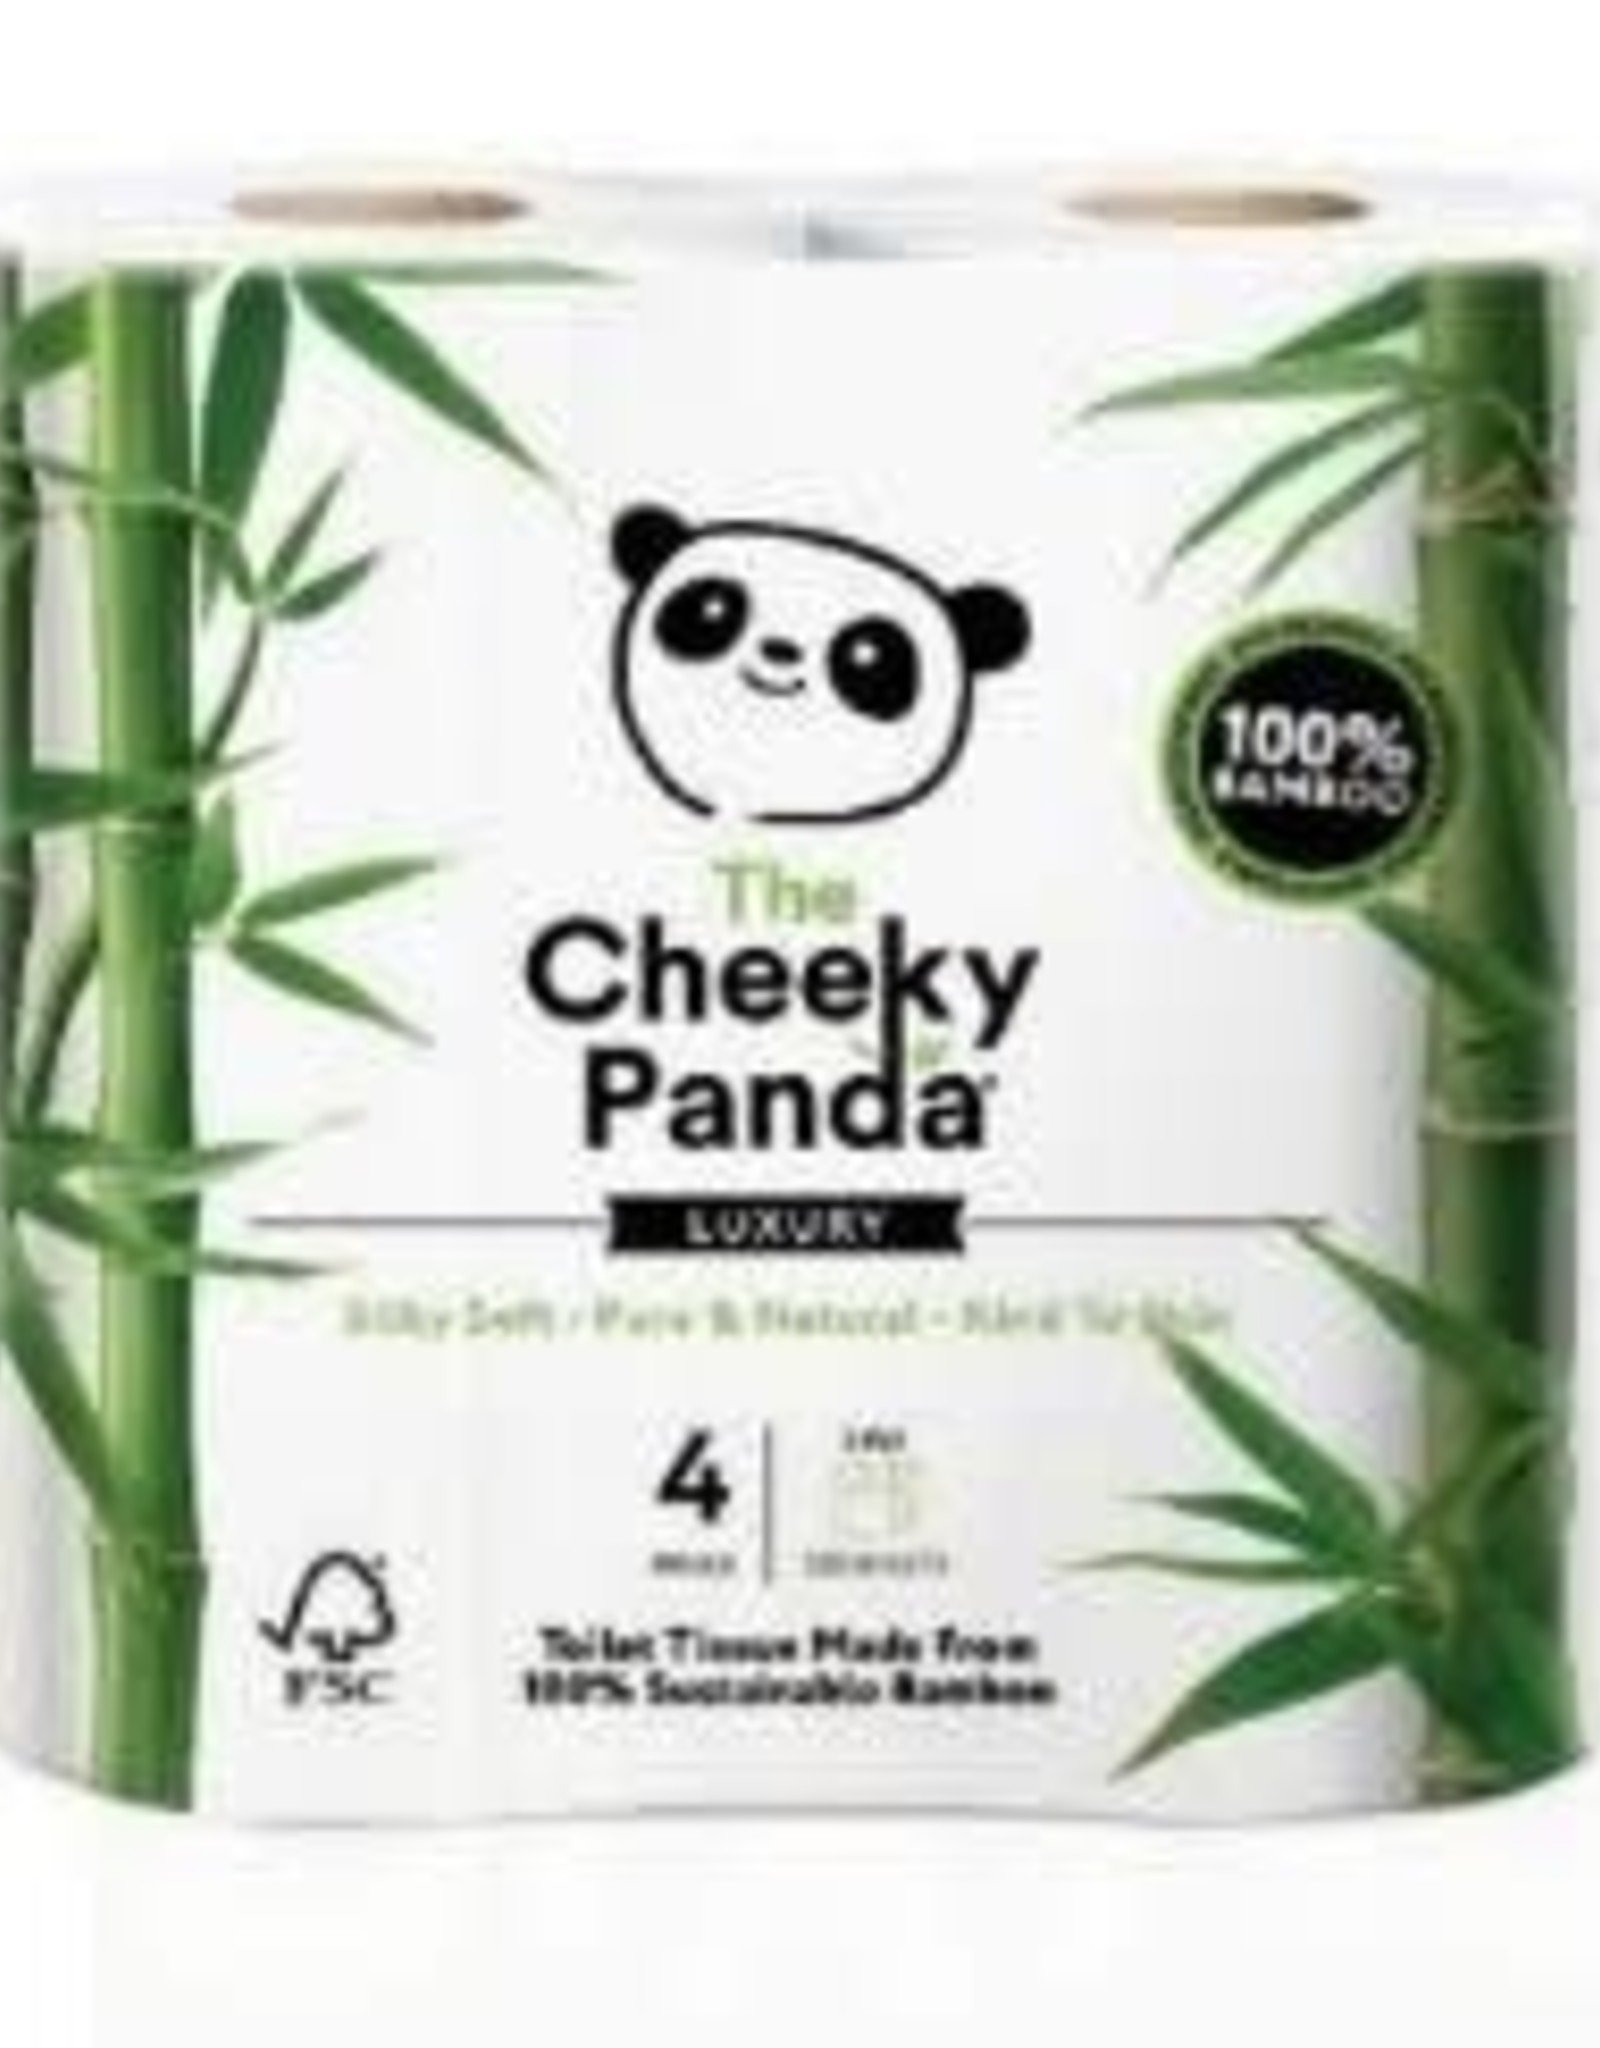 The Cheeky Panda The Cheeky Panda - Bamboo Toilet papier 4 rollen - 200 sheets per rol